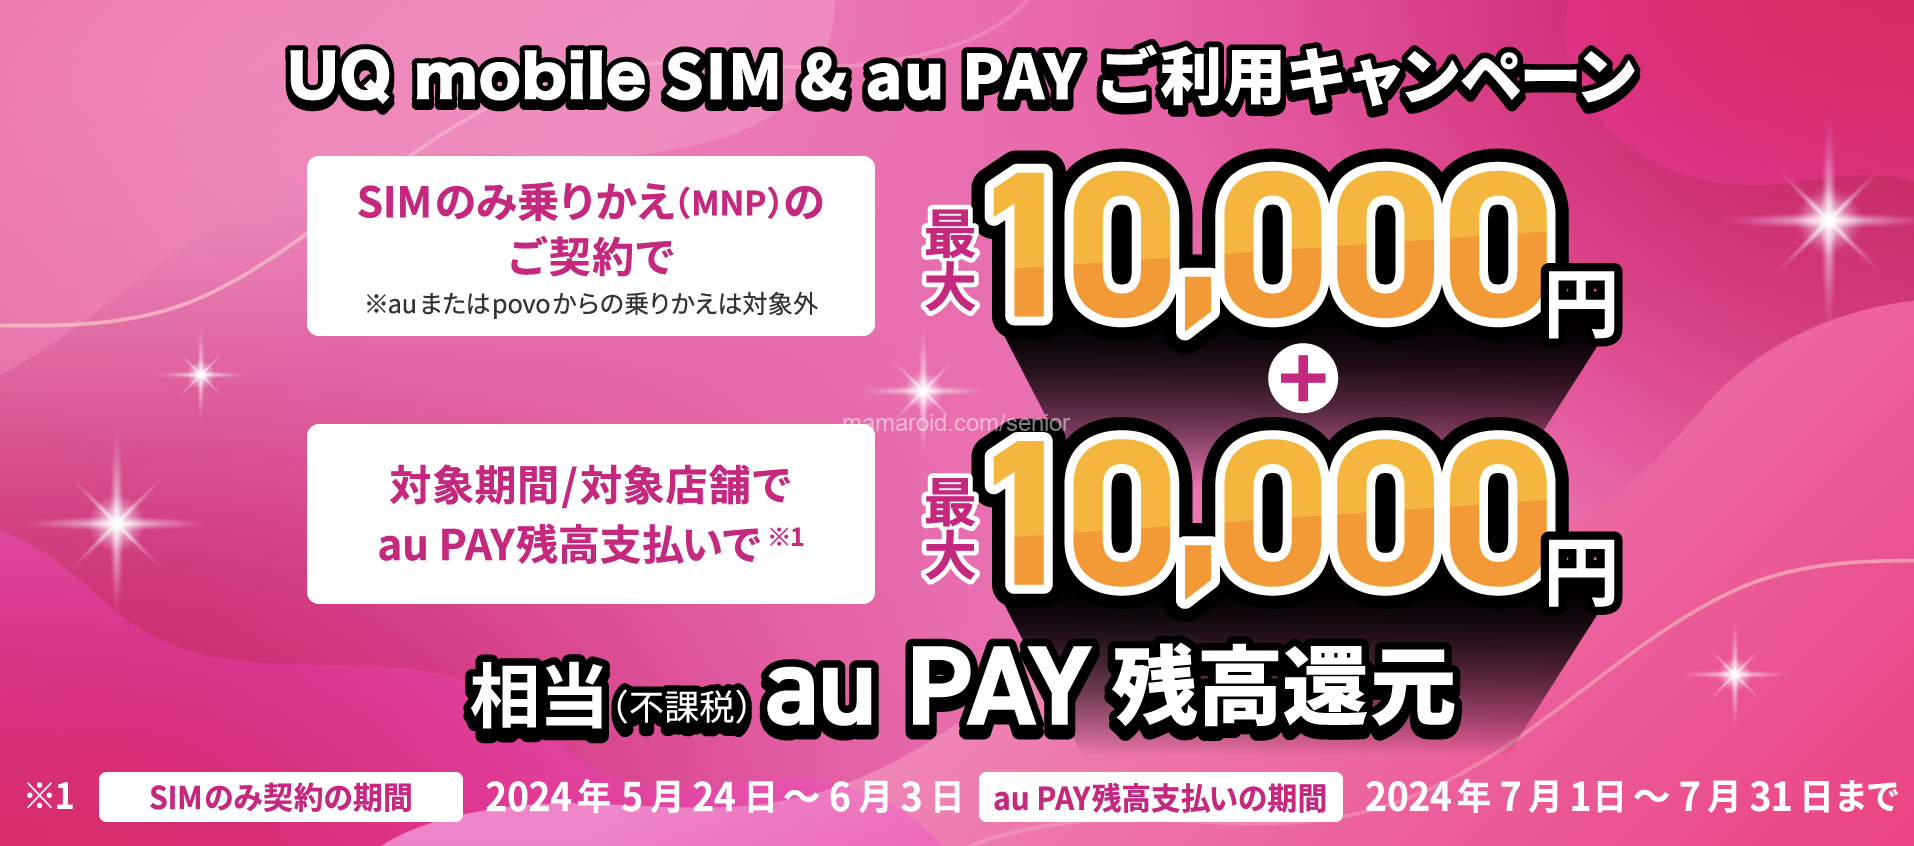 UQ mobile 最大2万円相当のau PAYがもらえるキャンペーン実施中